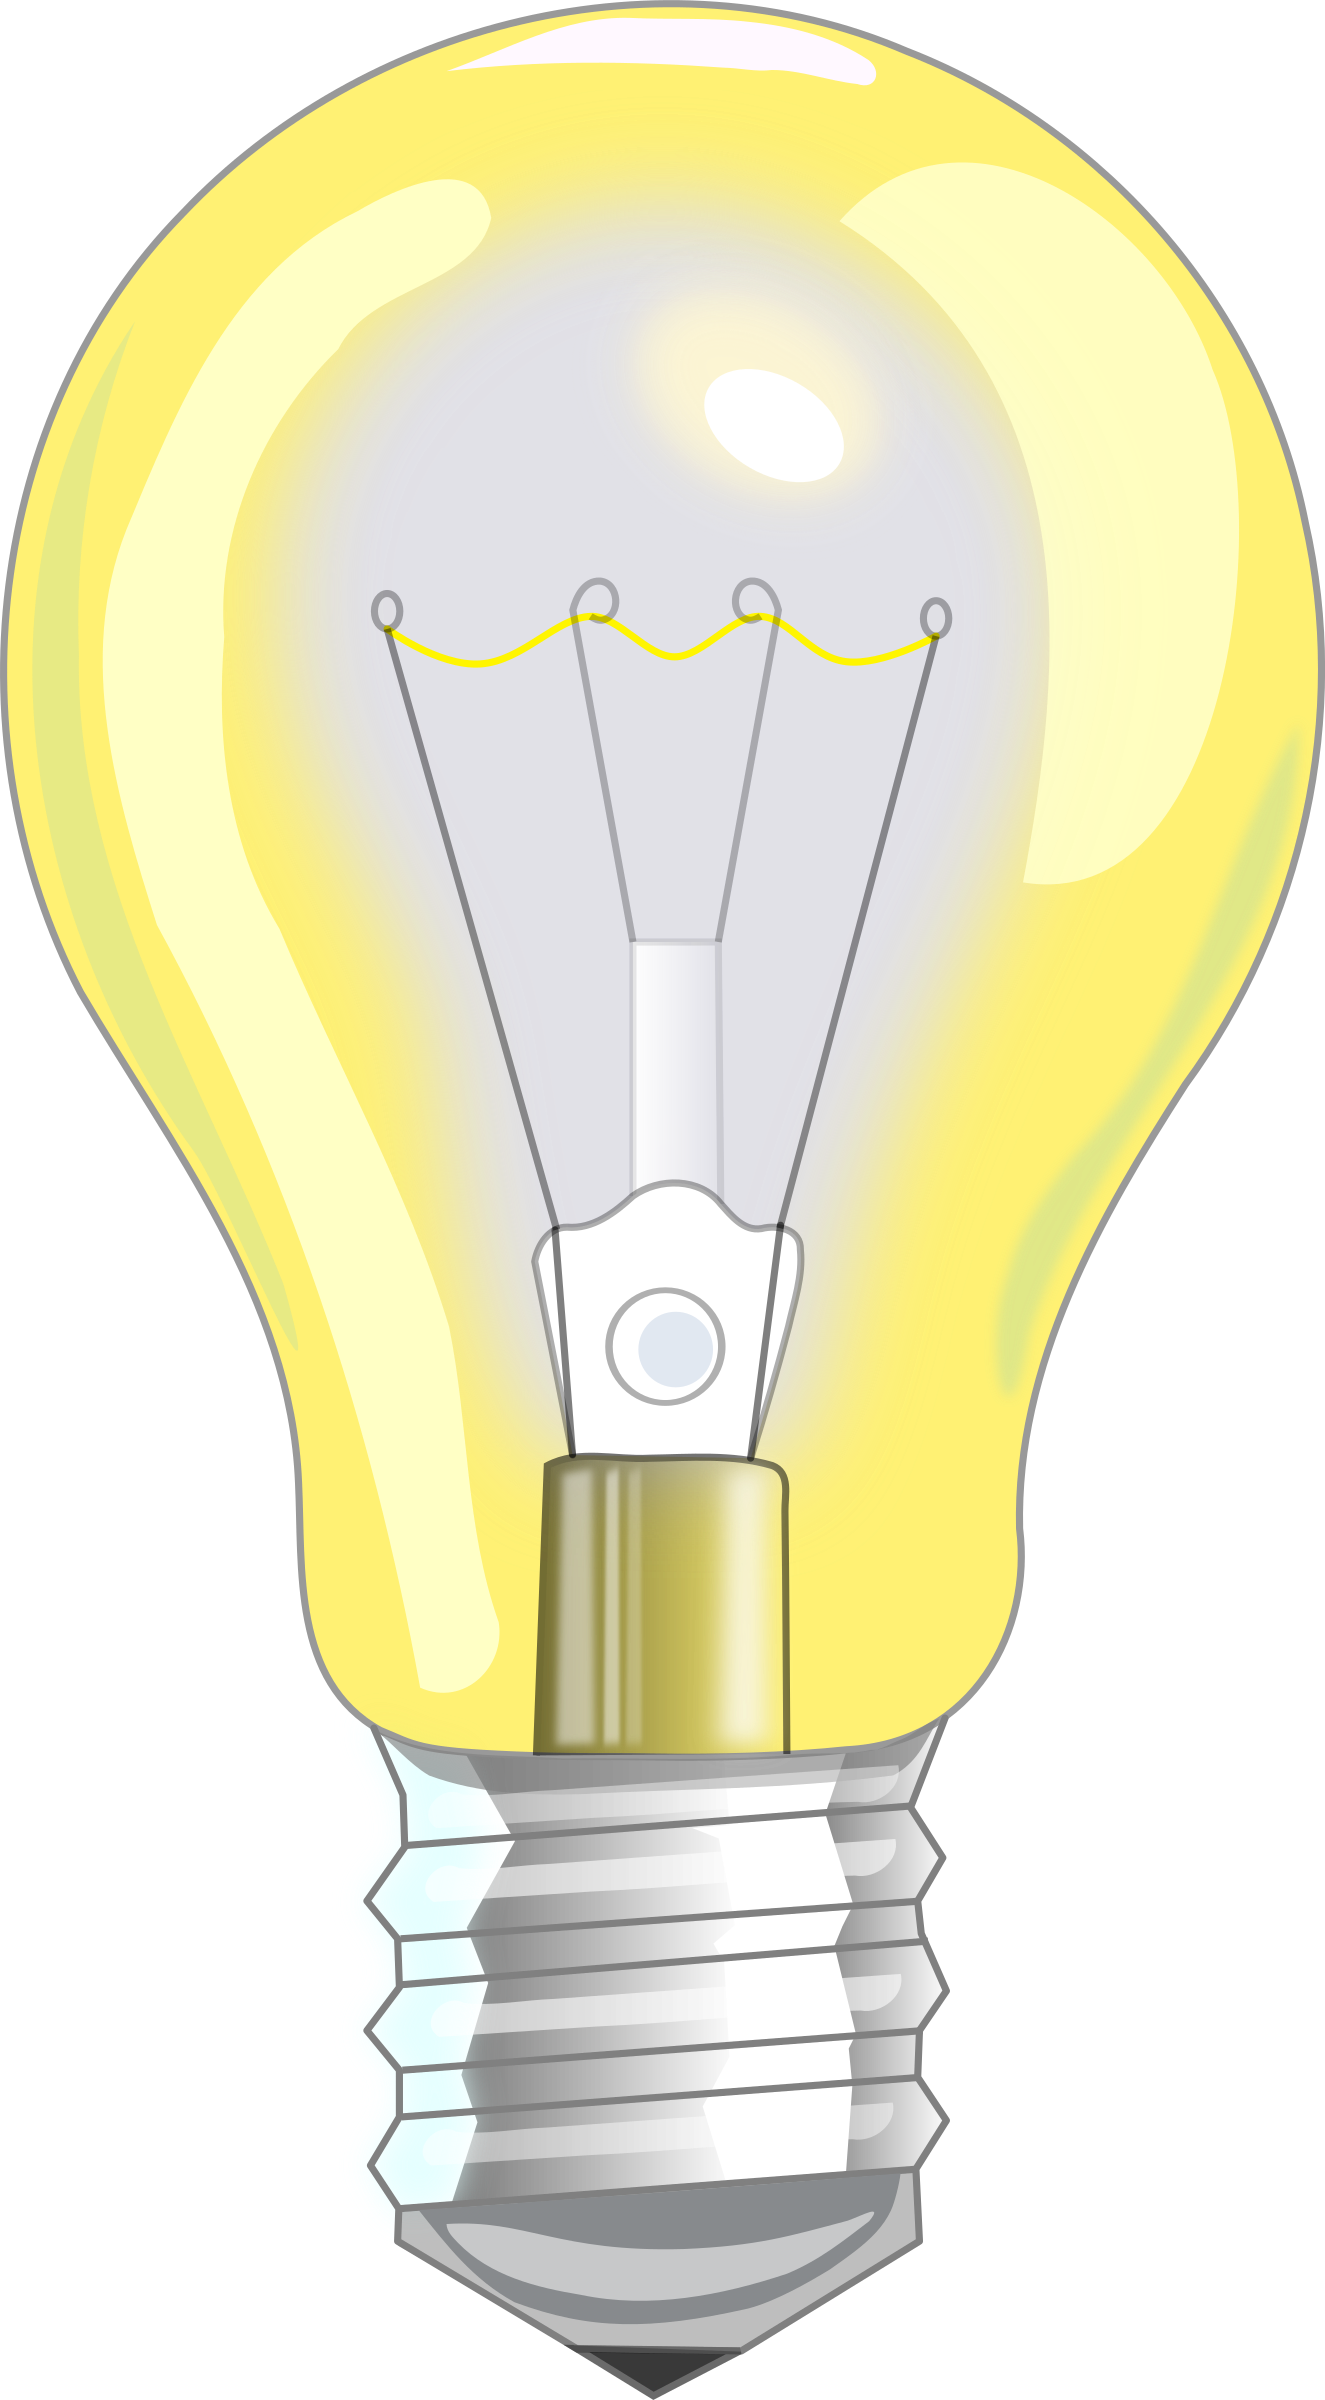 Light Fixture Lamp Incandescent Bulb Drawing Clipart